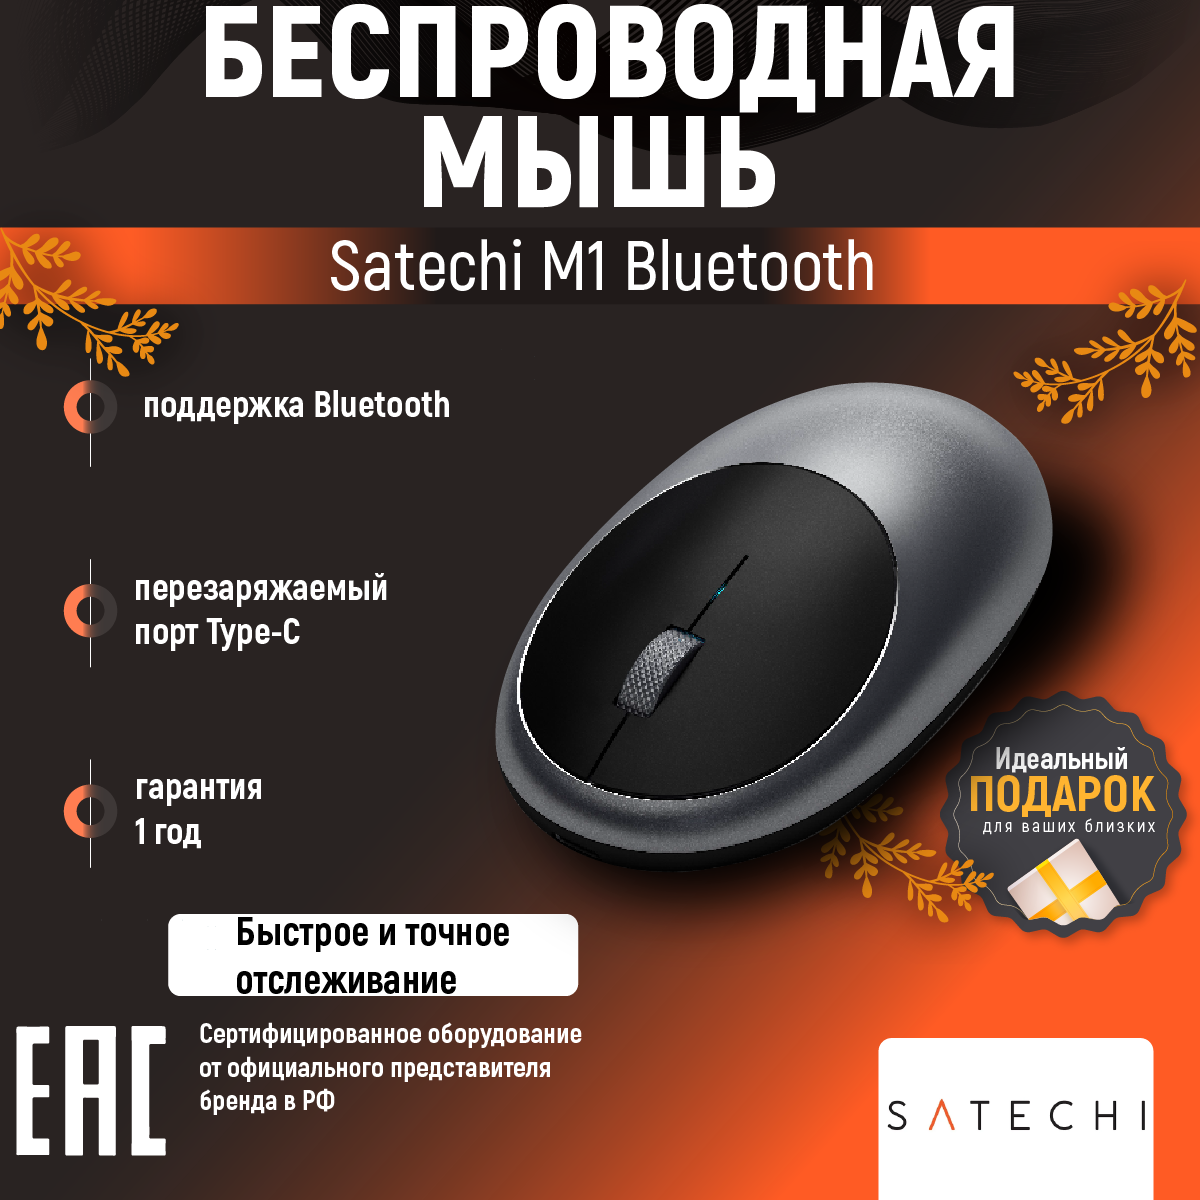 Беспроводная компактная мышь Satechi M1 Bluetooth, серый космос